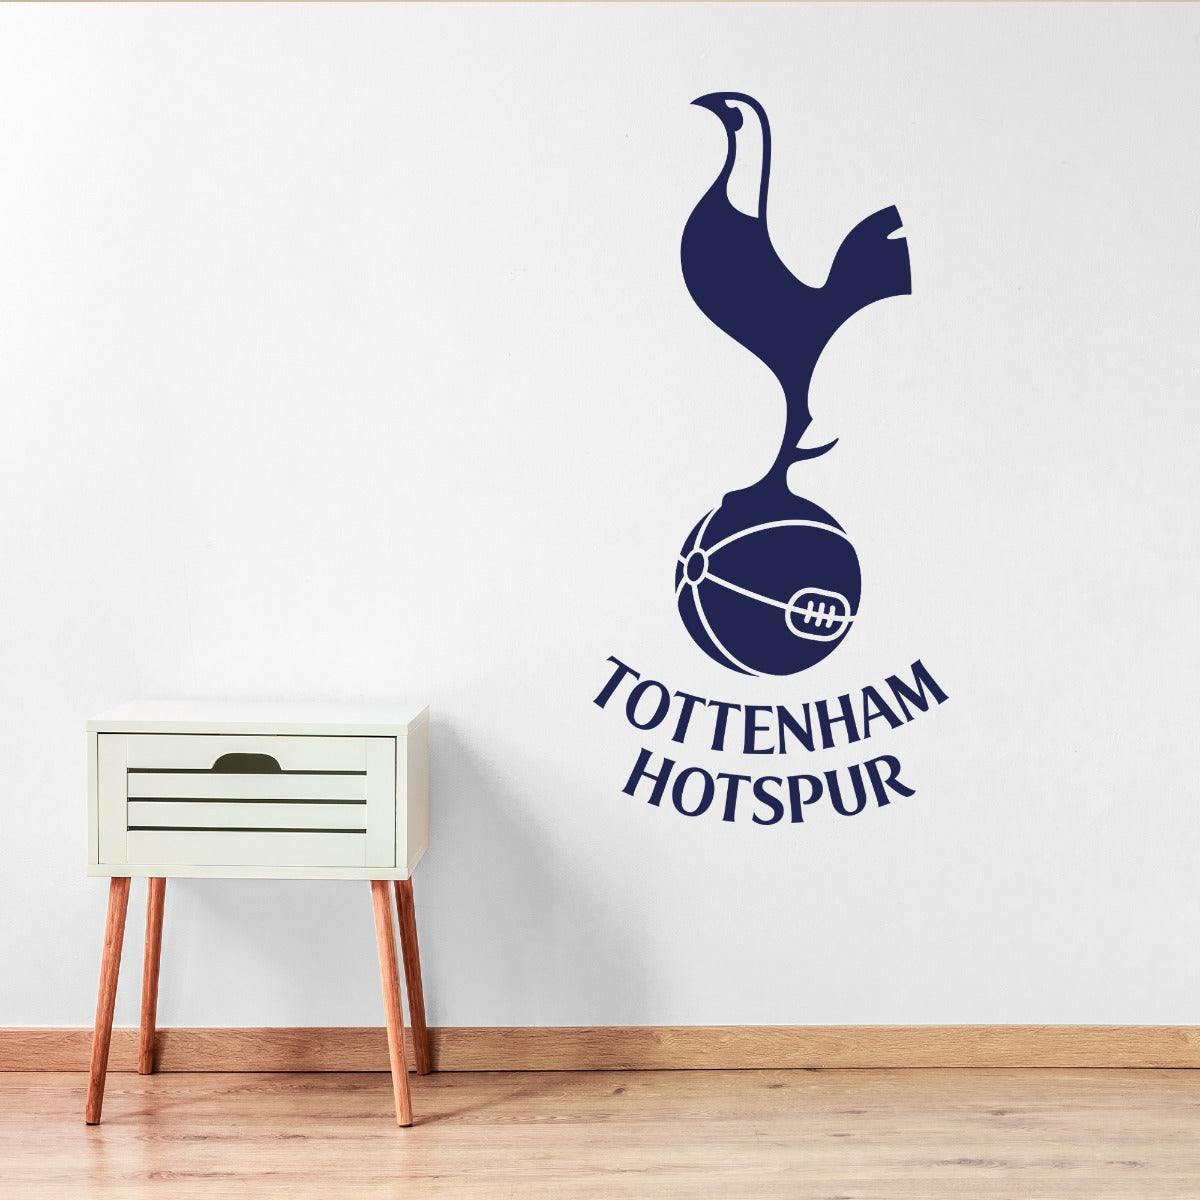 Tottenham Hotspur Football Club - Crest + Spurs Wall Sticker Set